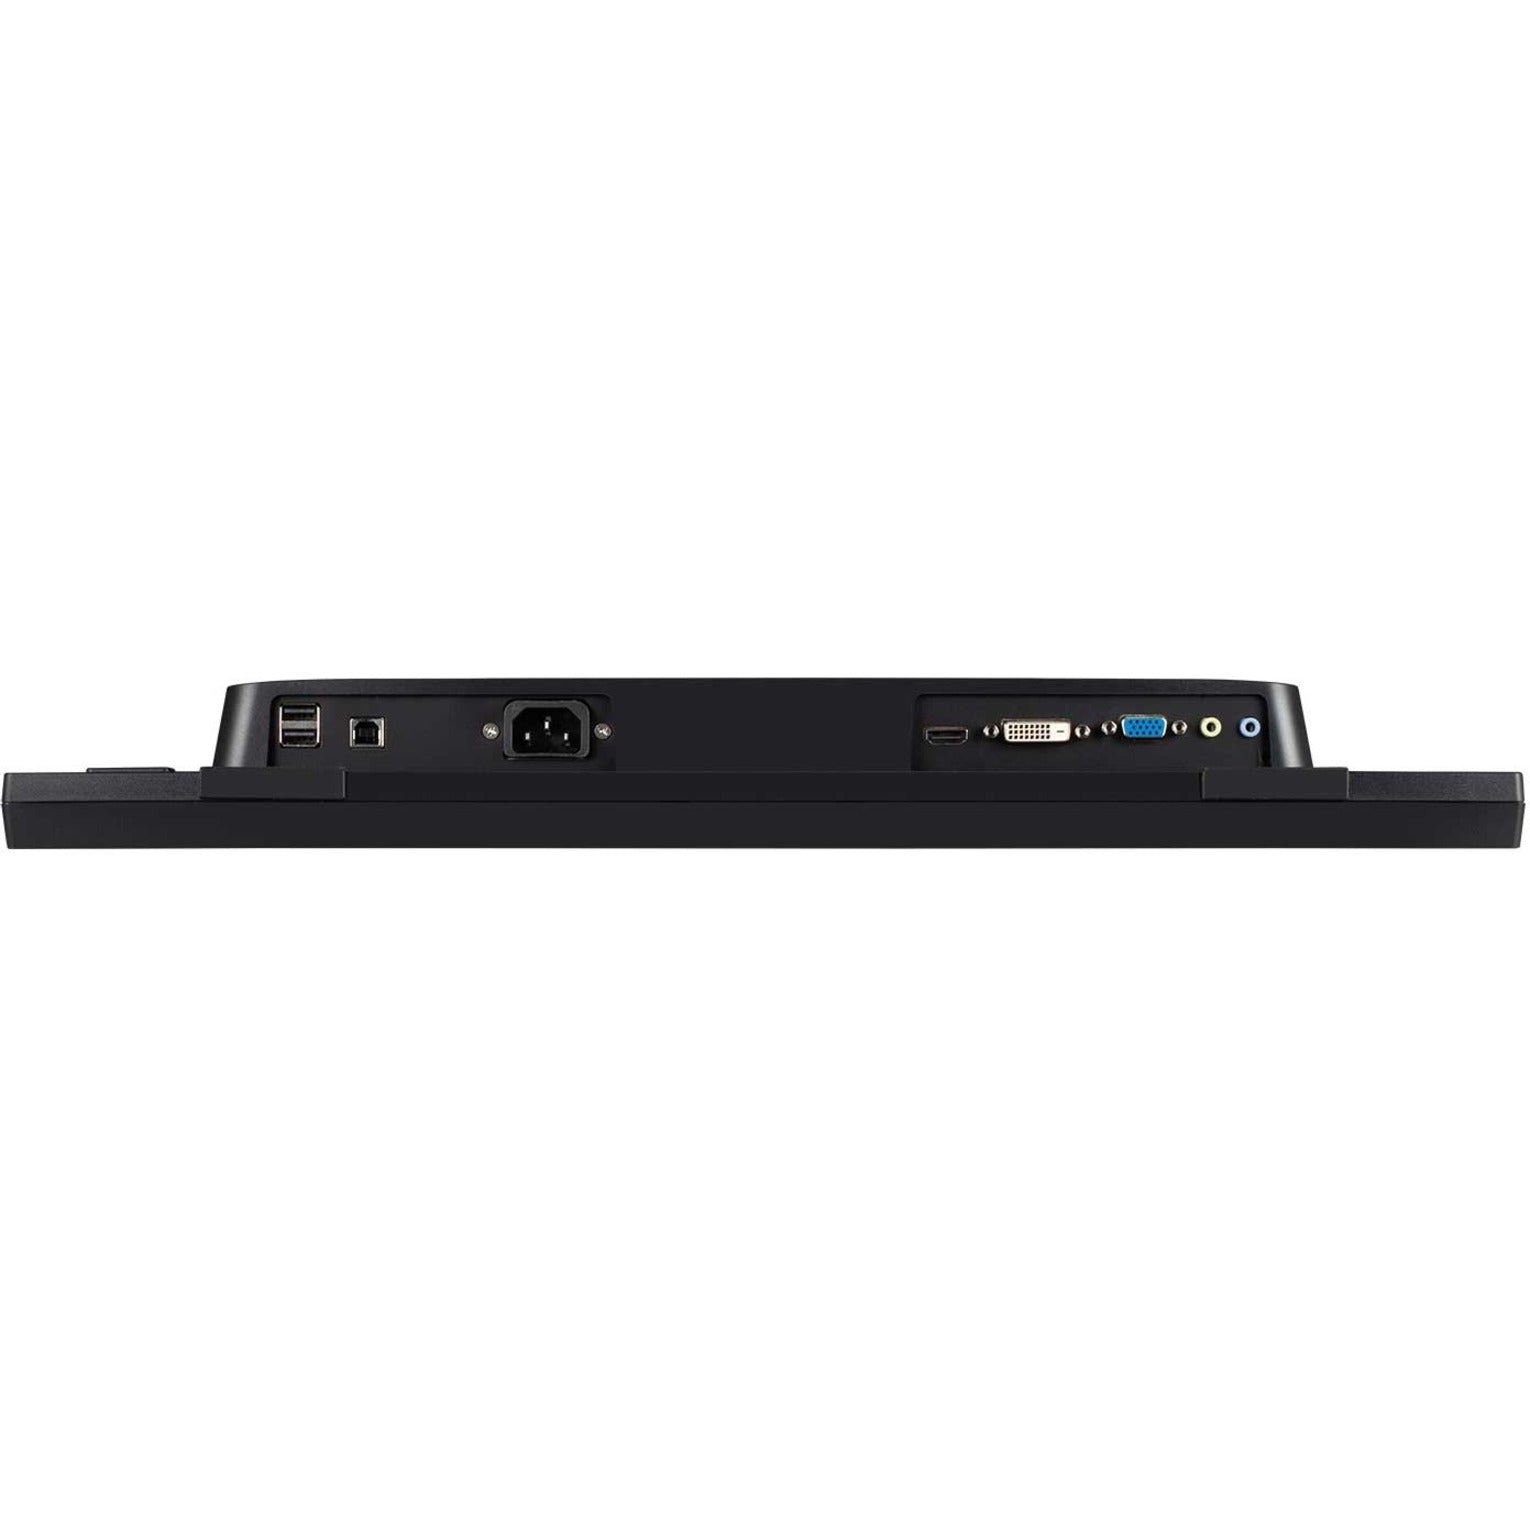 ViewSonic TD2223 22" Touch Display, Full HD, 10-point IR, USB Hub, 3 Year Warranty